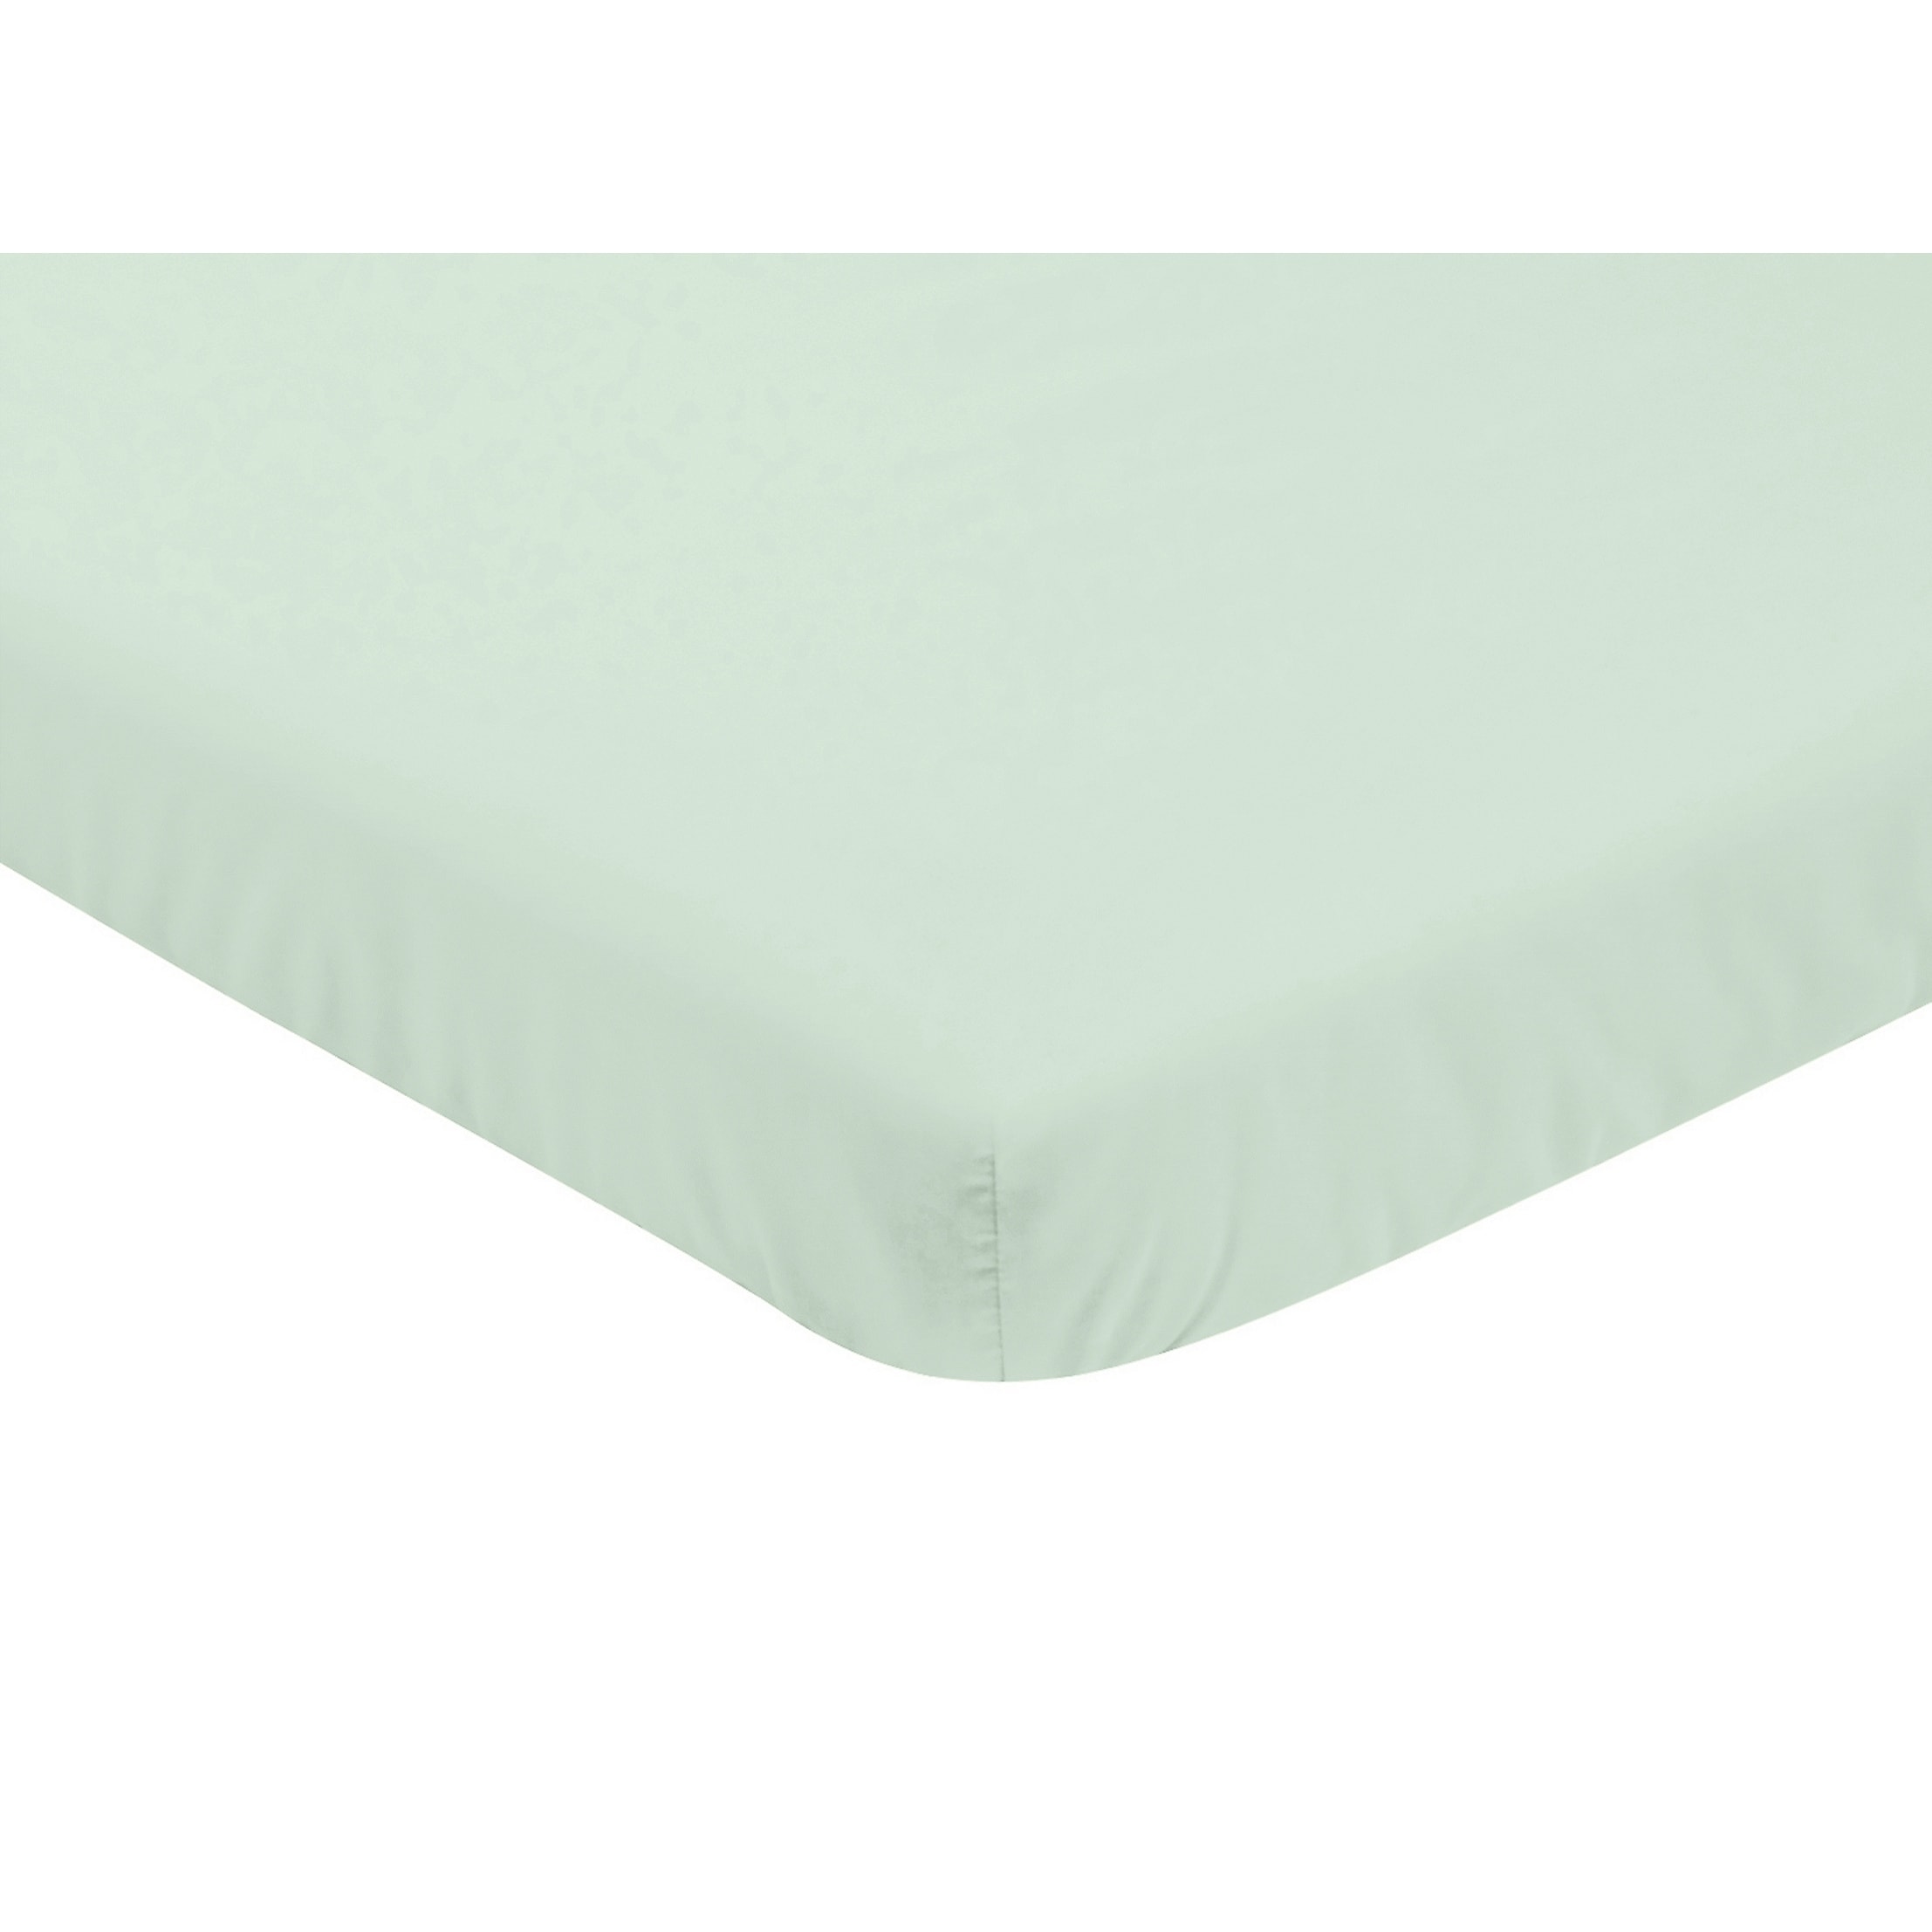 mini crib sheets size